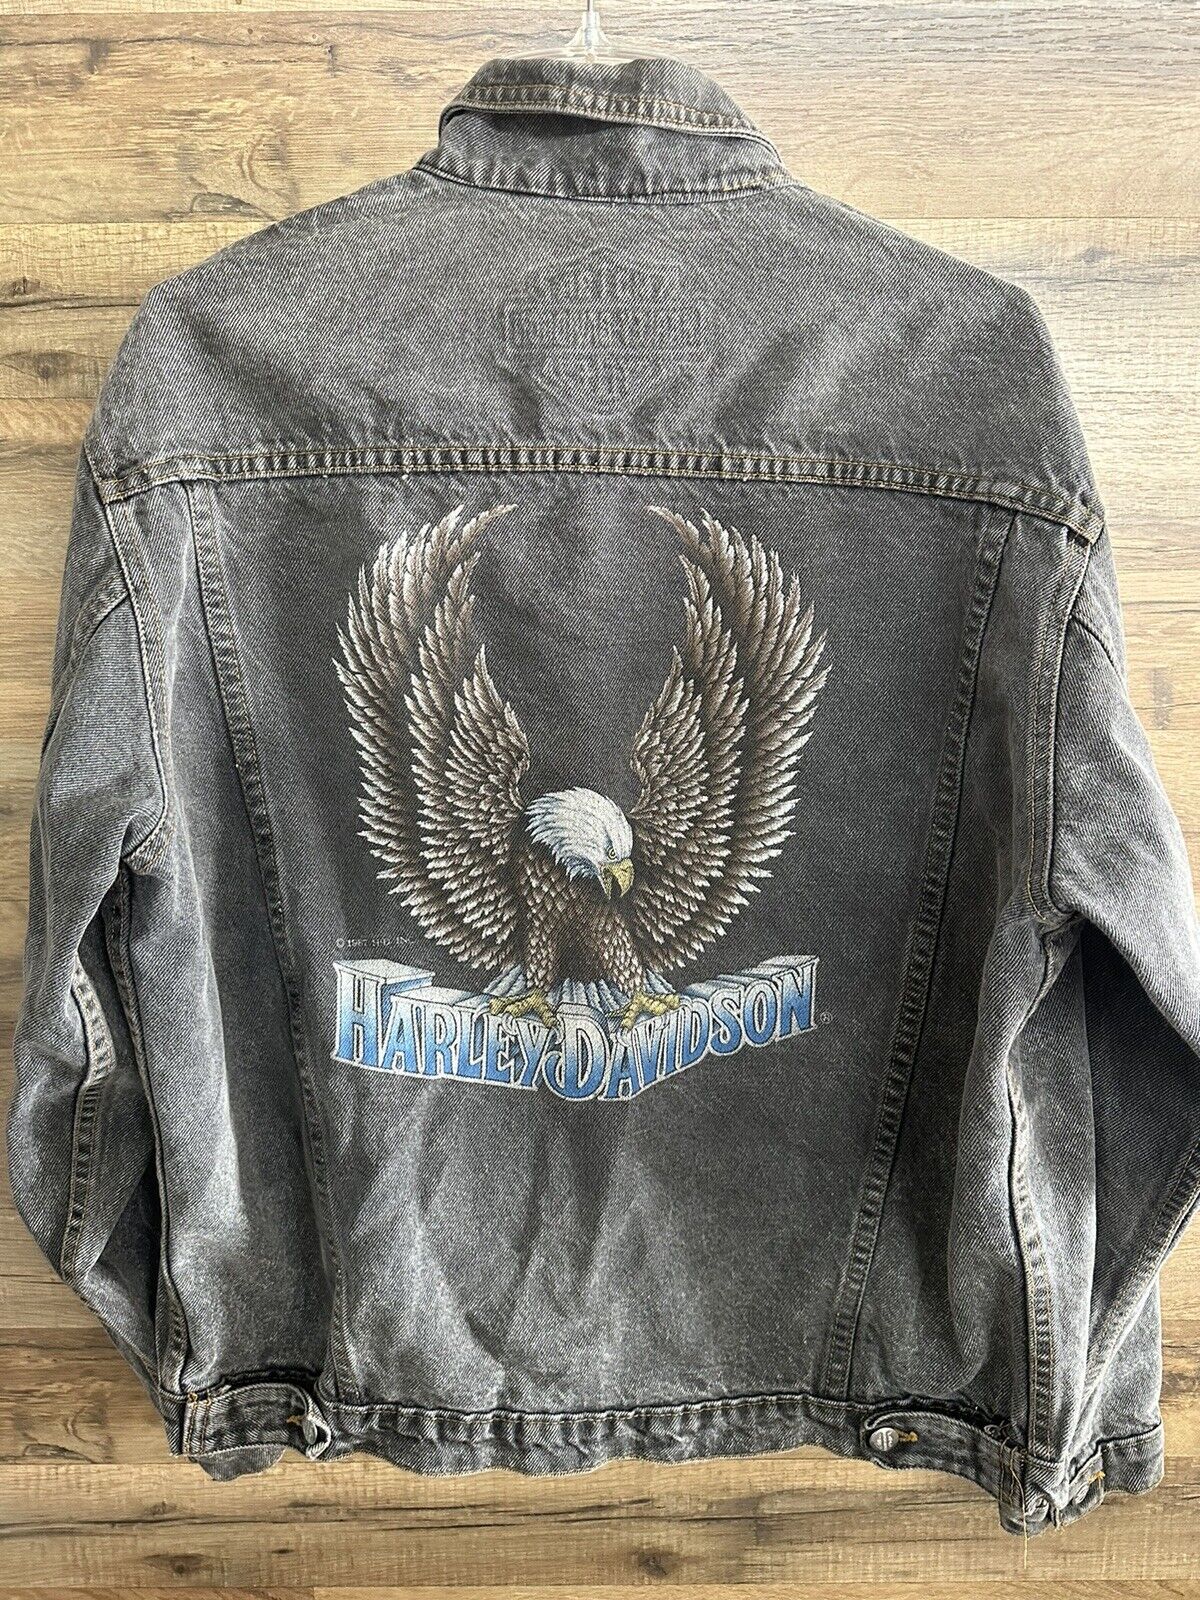 Vintage Harley Davidson Men’s Denim Jacket Motorcycle Eagle Print Made In USA